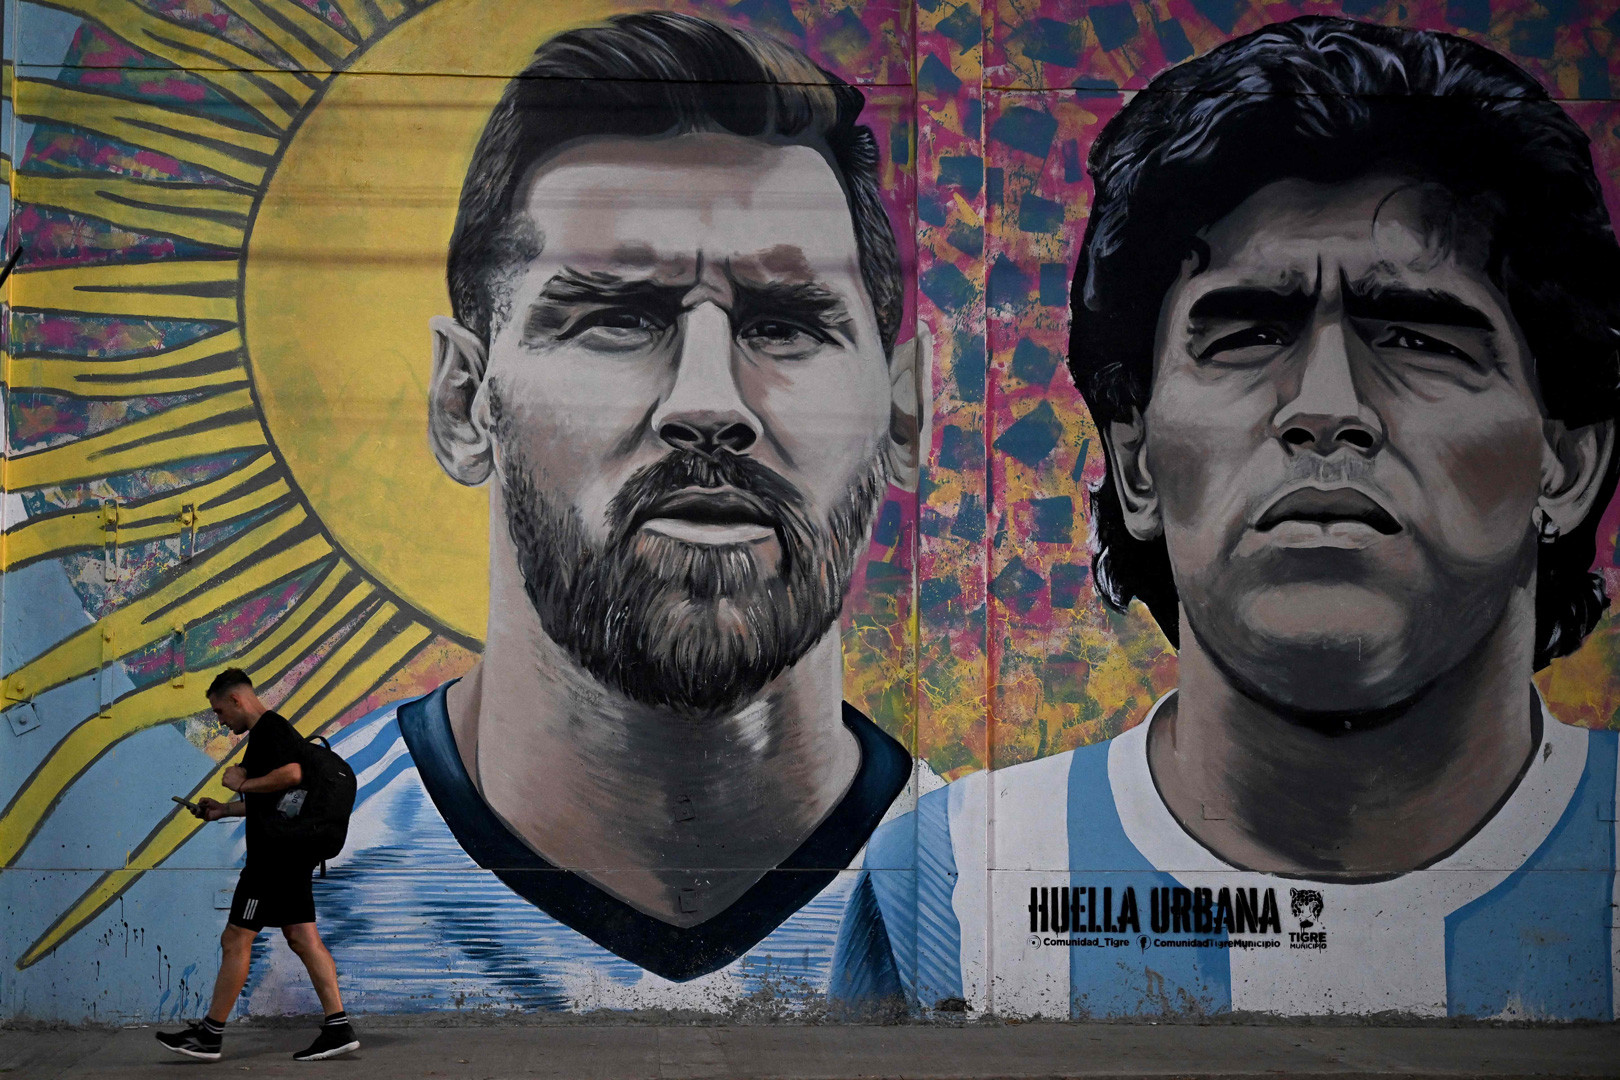 Cuộc chiến Messi  Manchester Utd qua tranh vẽ  Bóng đá  Vietnam  VietnamPlus